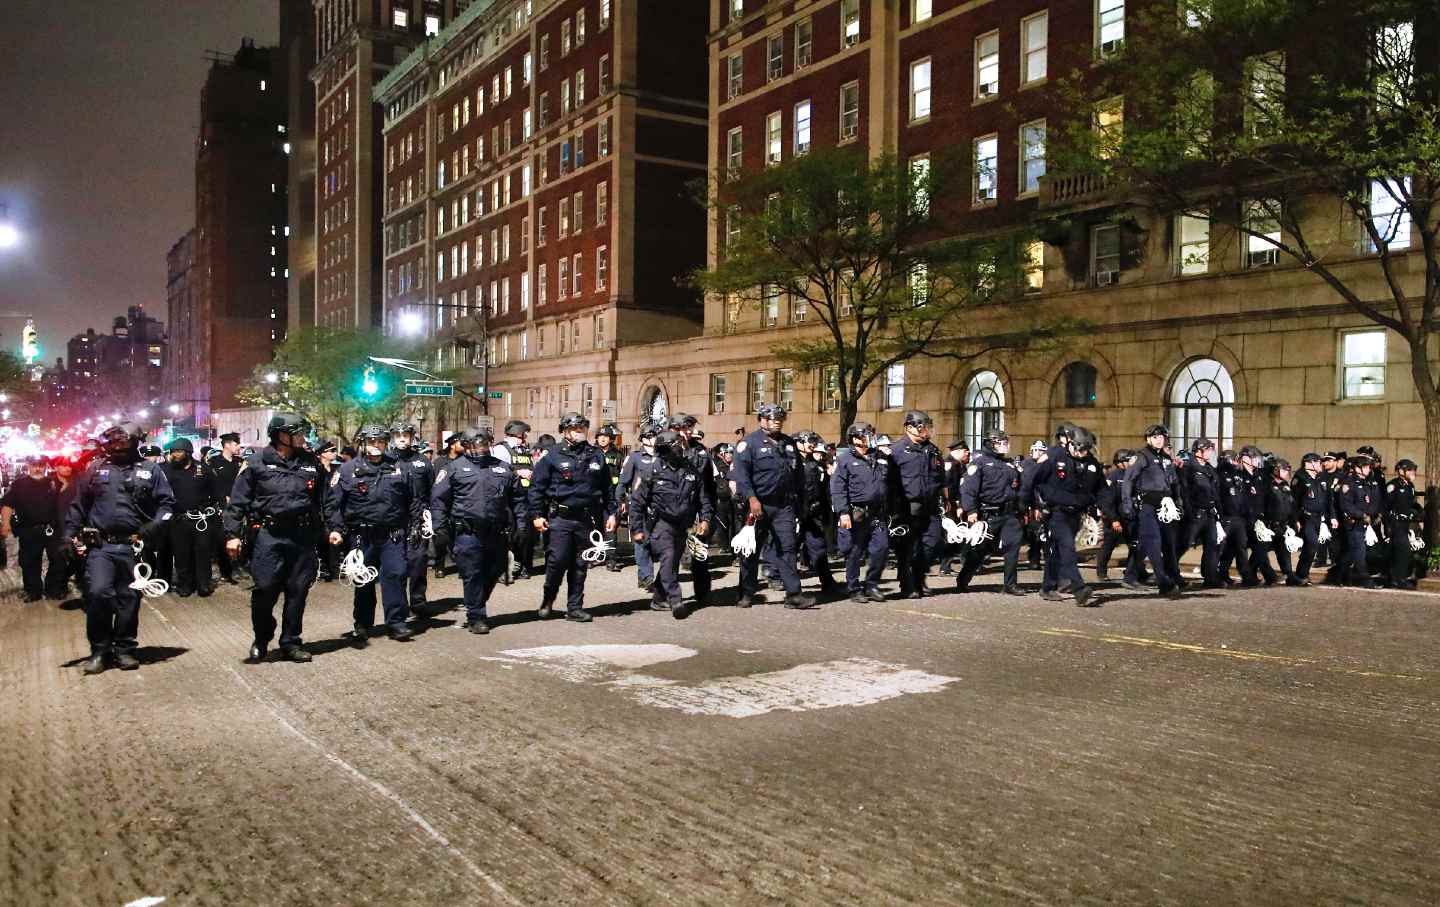 NYPD-Beamte in Kampfausrüstung marschieren am 30. April 2024 in New York City auf den Campus der Columbia University, wo pro-palästinensische Studenten in einem Gebäude verbarrikadiert sind und ein Lager errichtet haben.